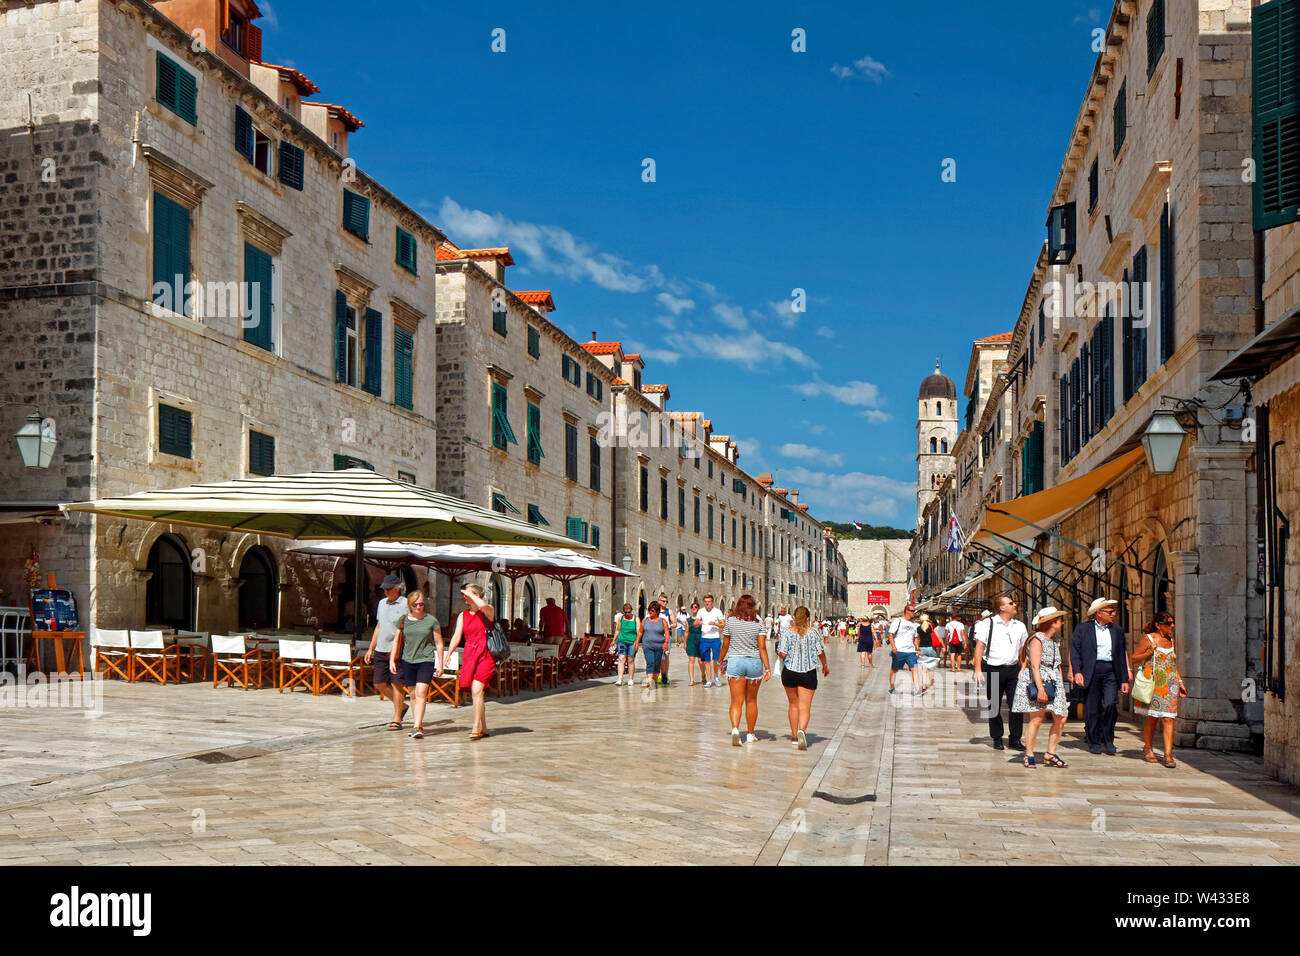 La Placa, la rue piétonne Stradun pavée ; ; 1468 ; calcaire ; surface brillante ; vieille ville ; restaurants en plein air, des parasols, des gens, Dubrovnik, Croatie, Europe ; Banque D'Images